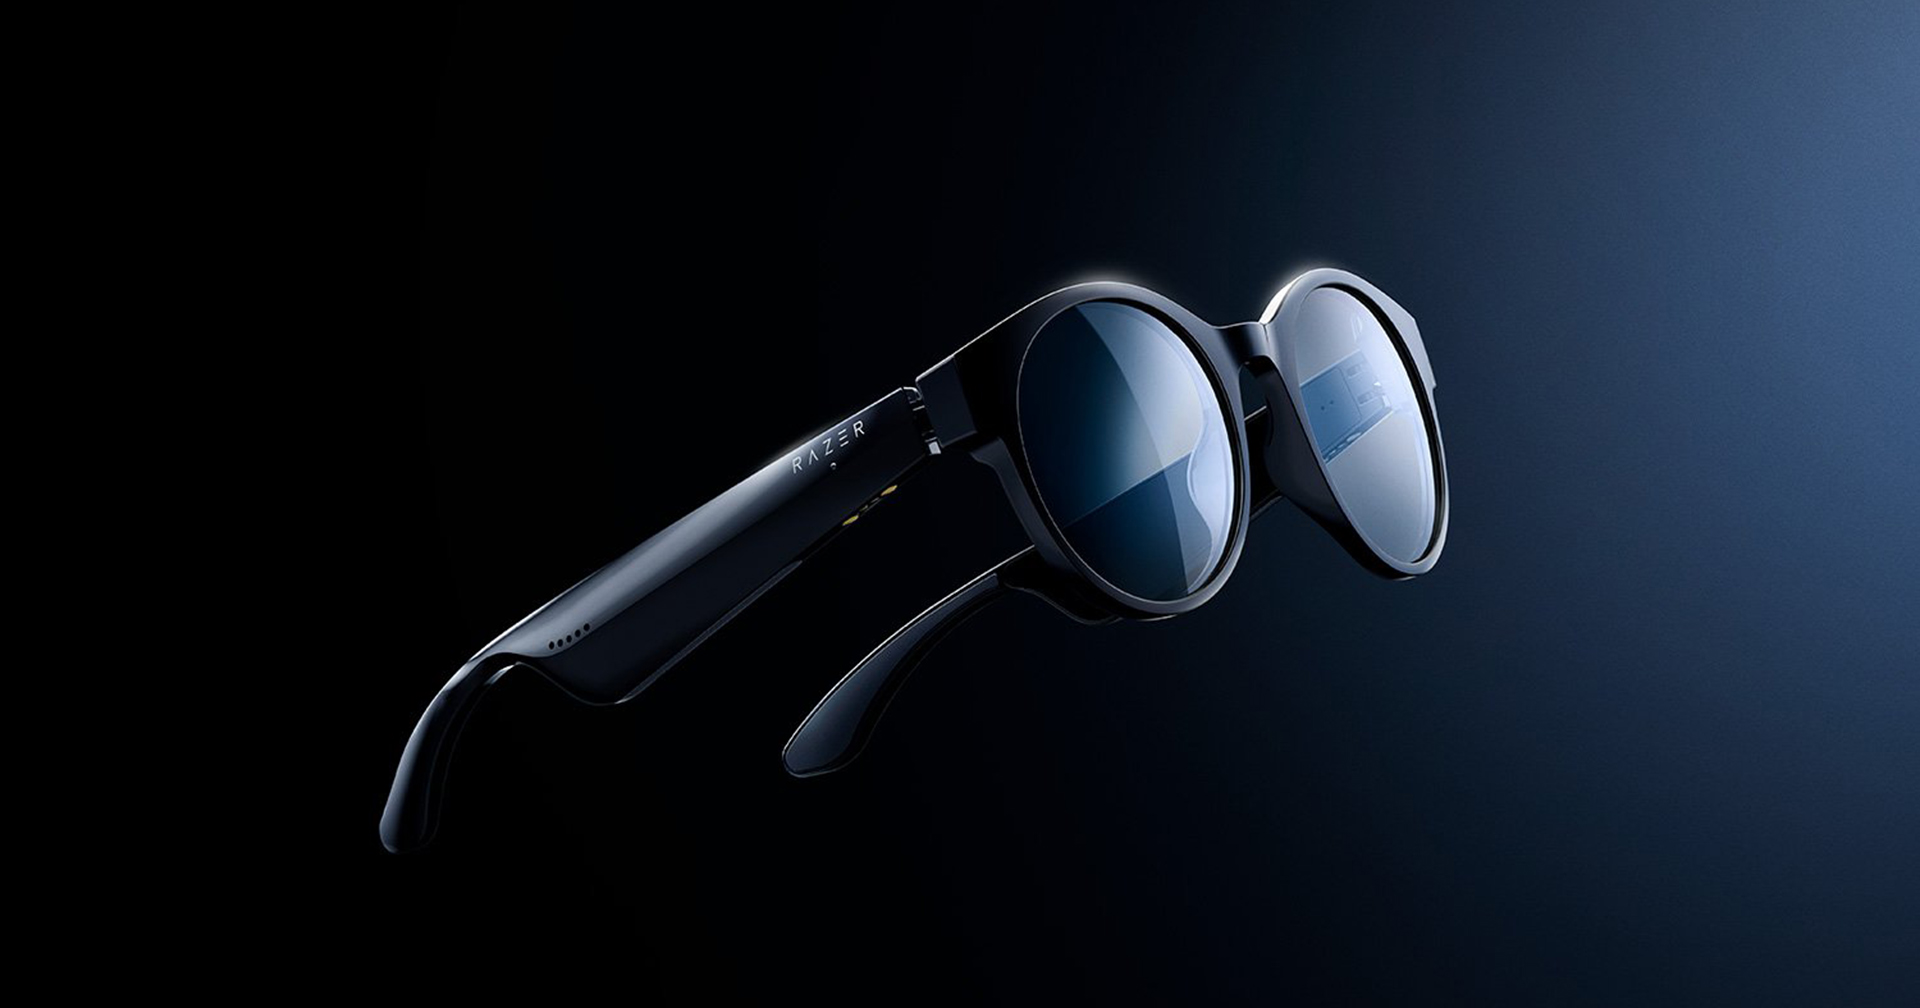 Razer เปิดตัวแว่นตาอัจฉริยะ “Anzu” ในราคา 6,000 บาท